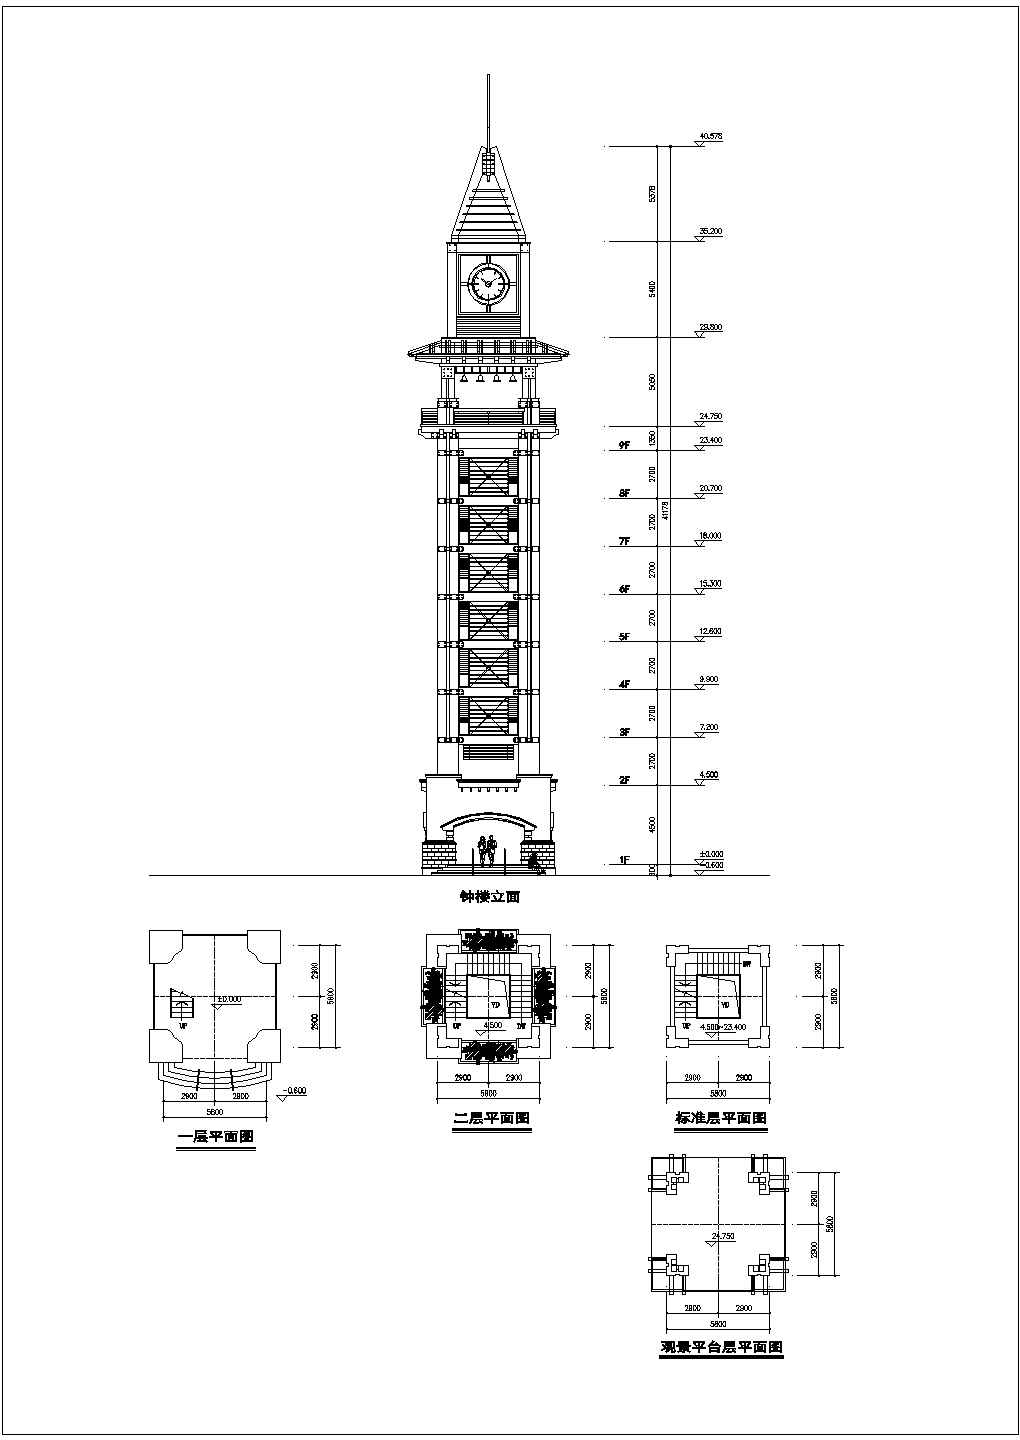 长5.8米 宽5.8米 9层钟楼设计图